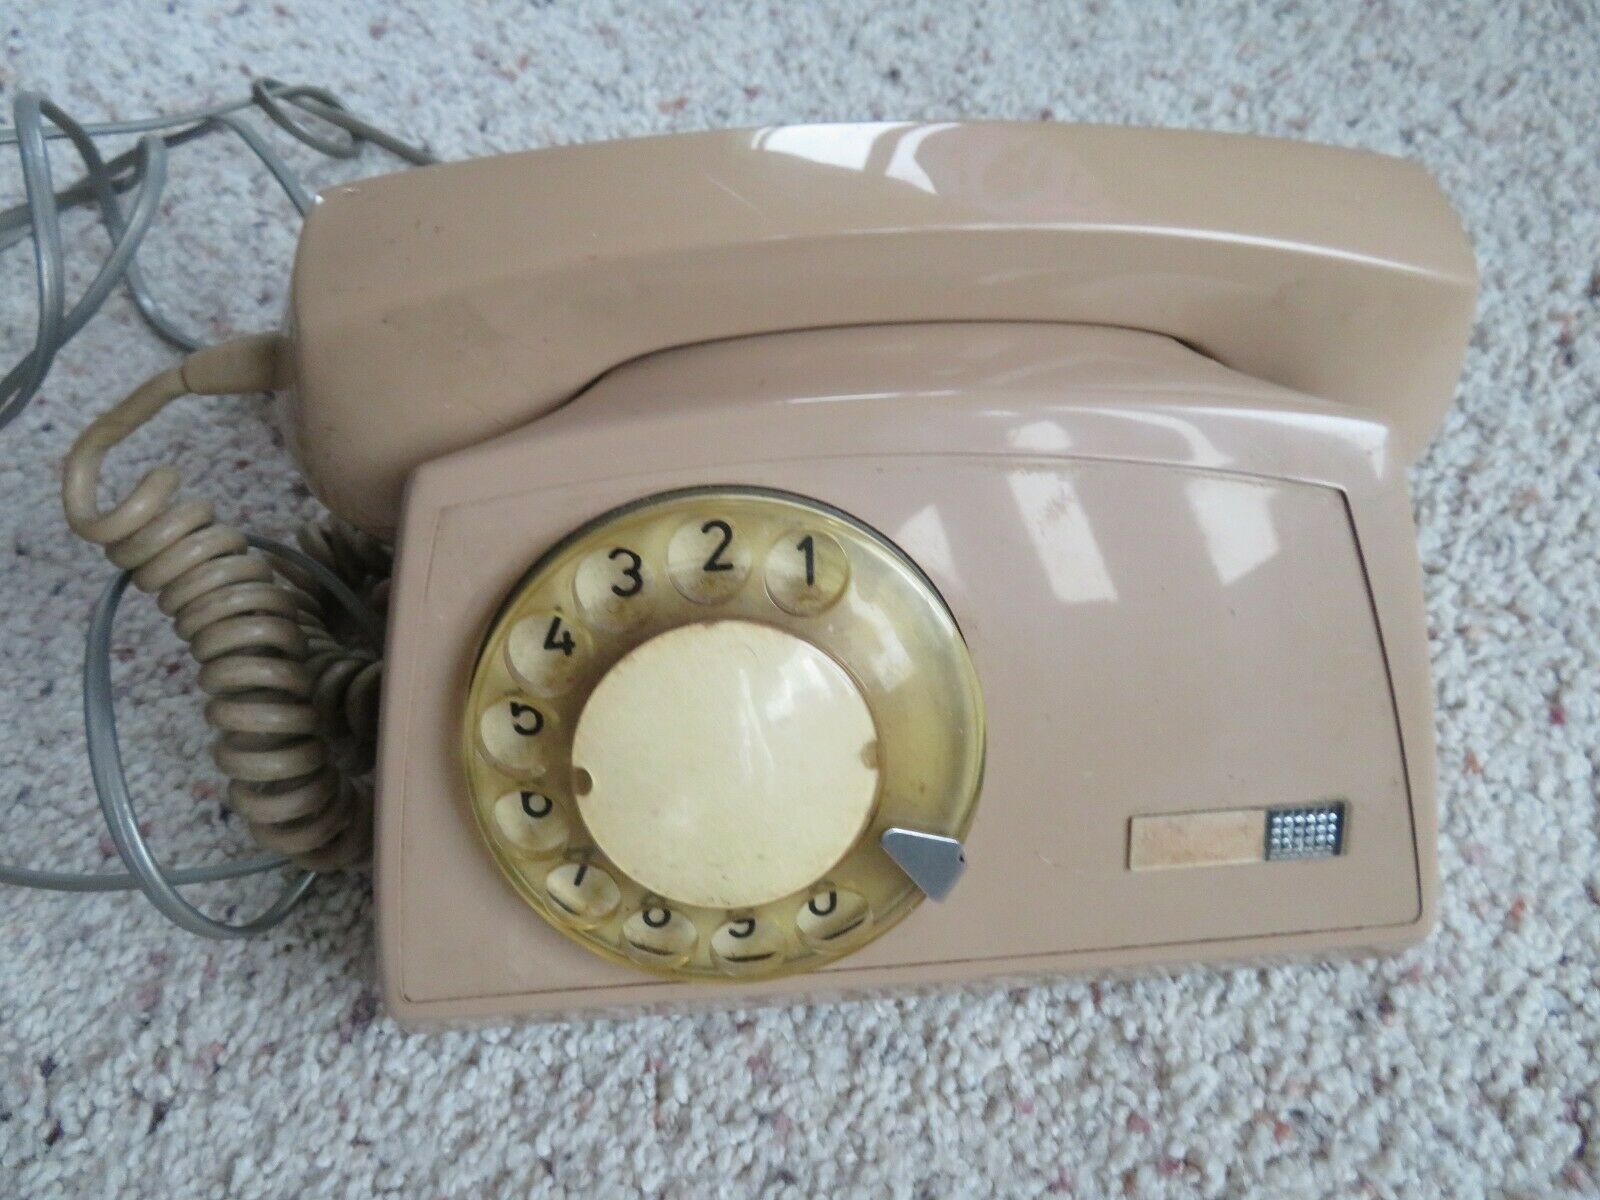 Vintage Commodore Soeakerphone